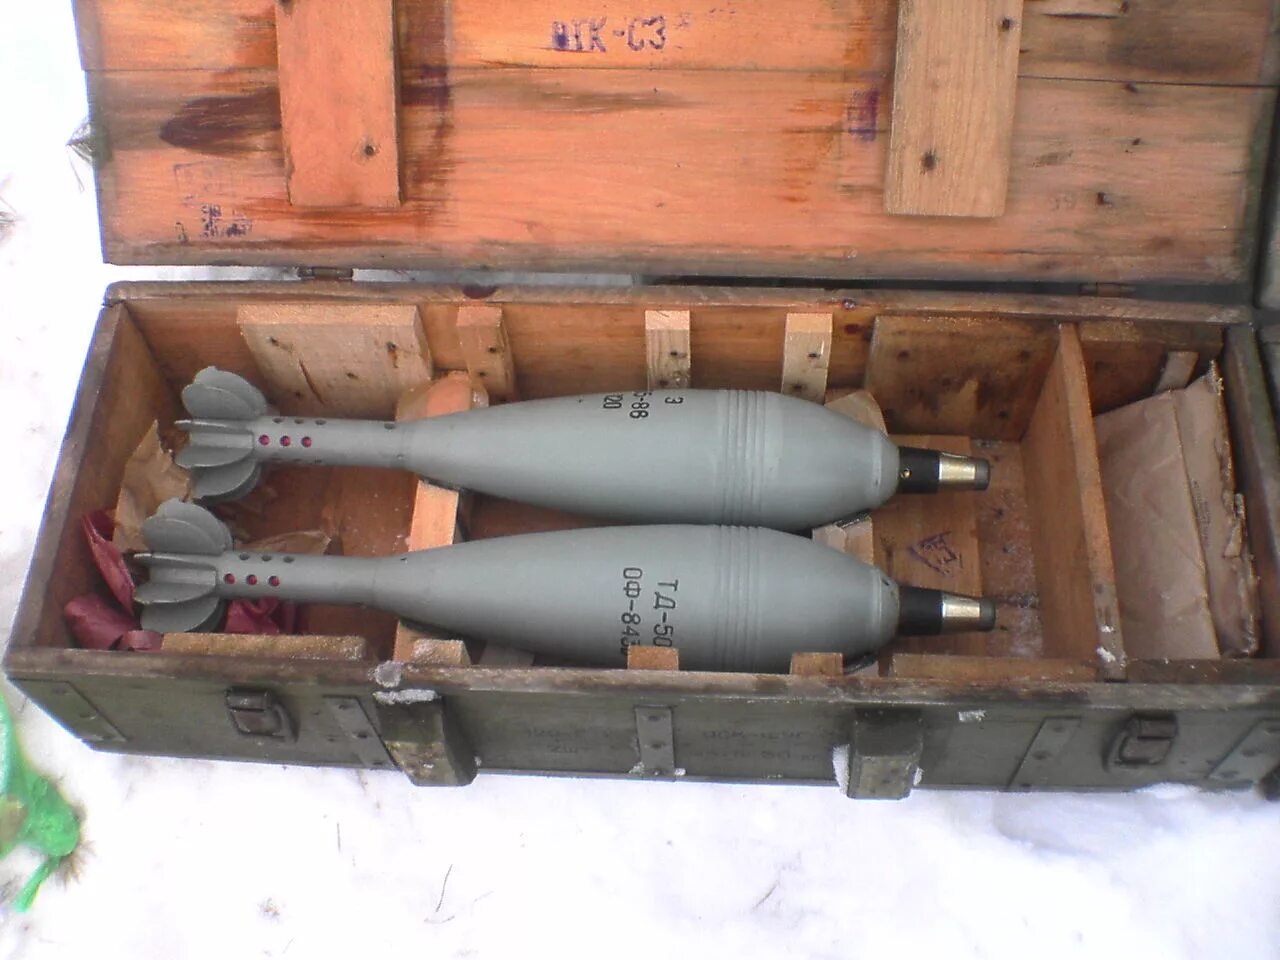 Калибр 122 мм снаряд. Ящик для взрывателей 120 мм миномета. 120 Мм мины в ящике. Укупорка 120 мм мин. Б 2б 11